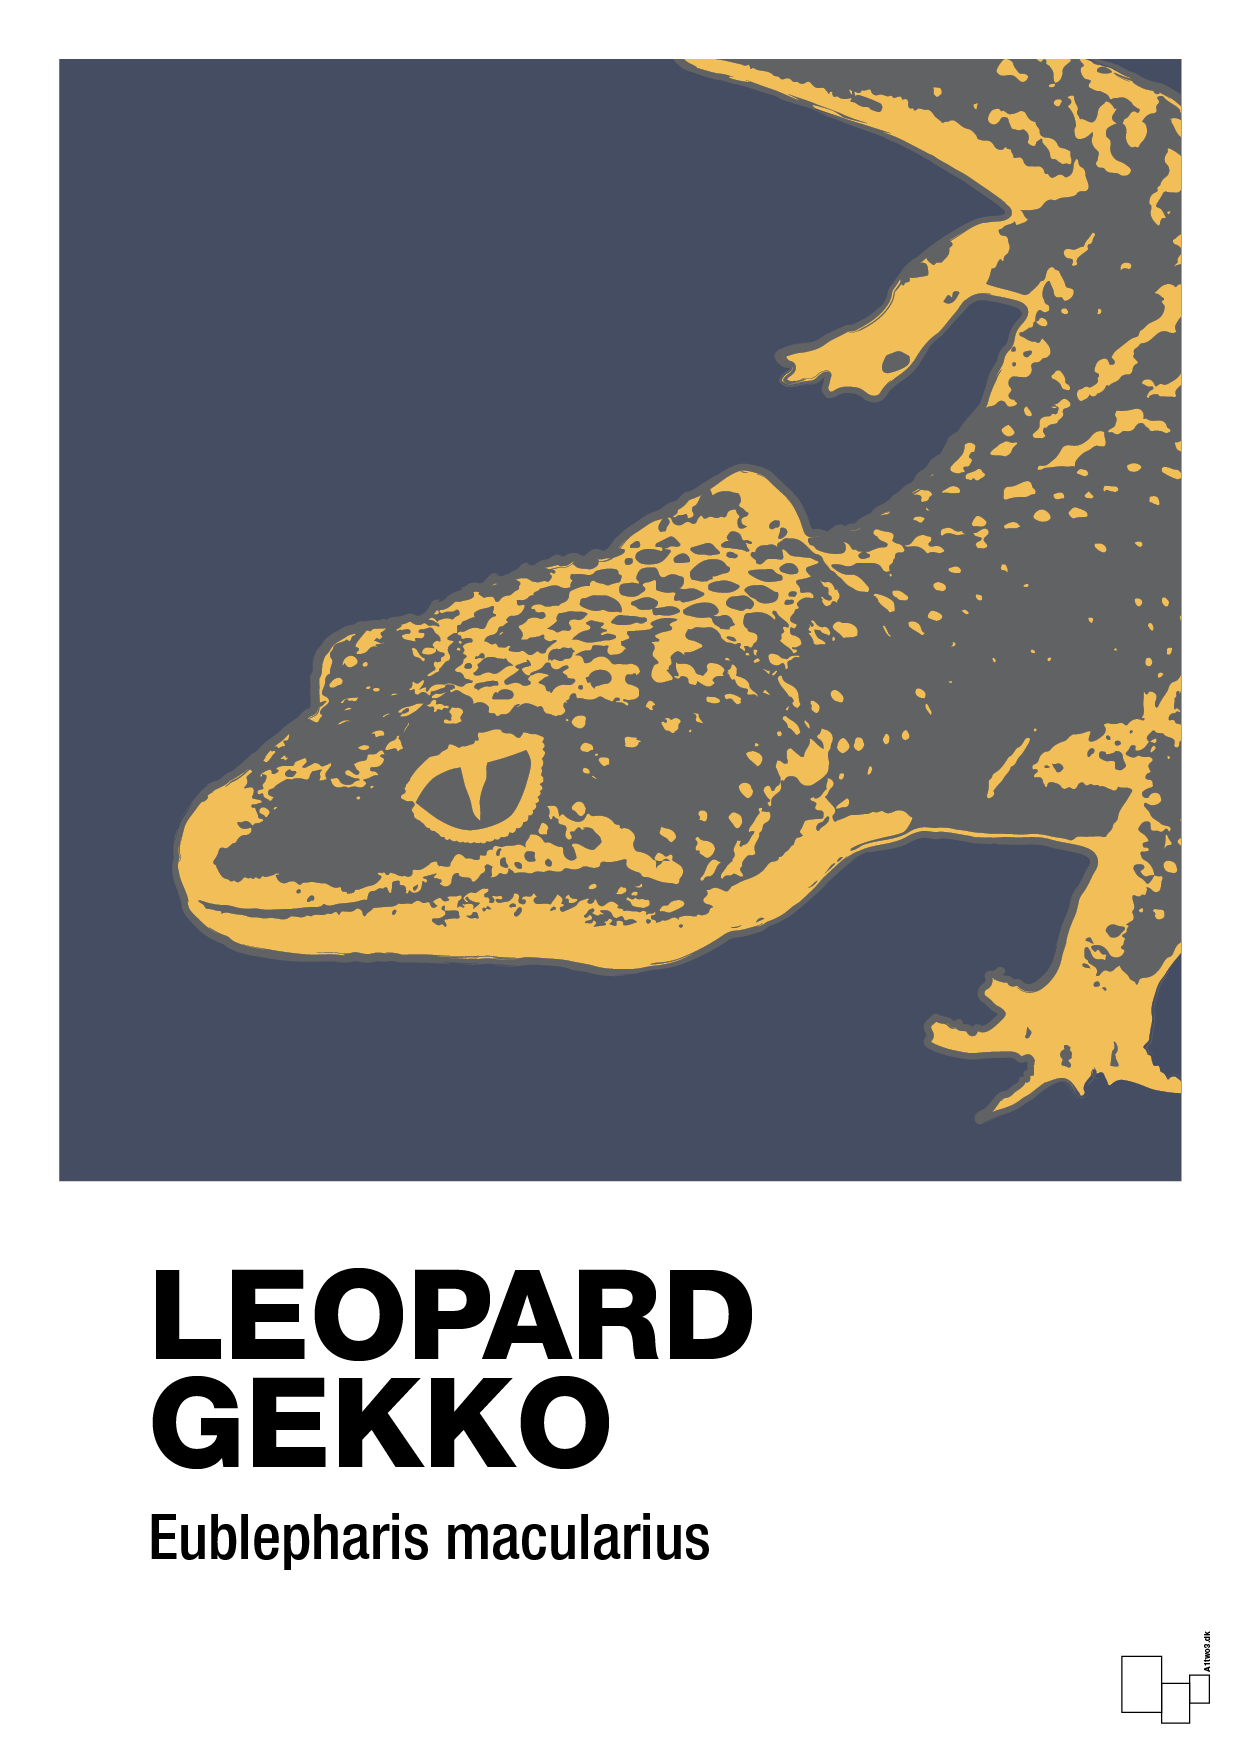 leopard gekko - Plakat med Videnskab i Petrol